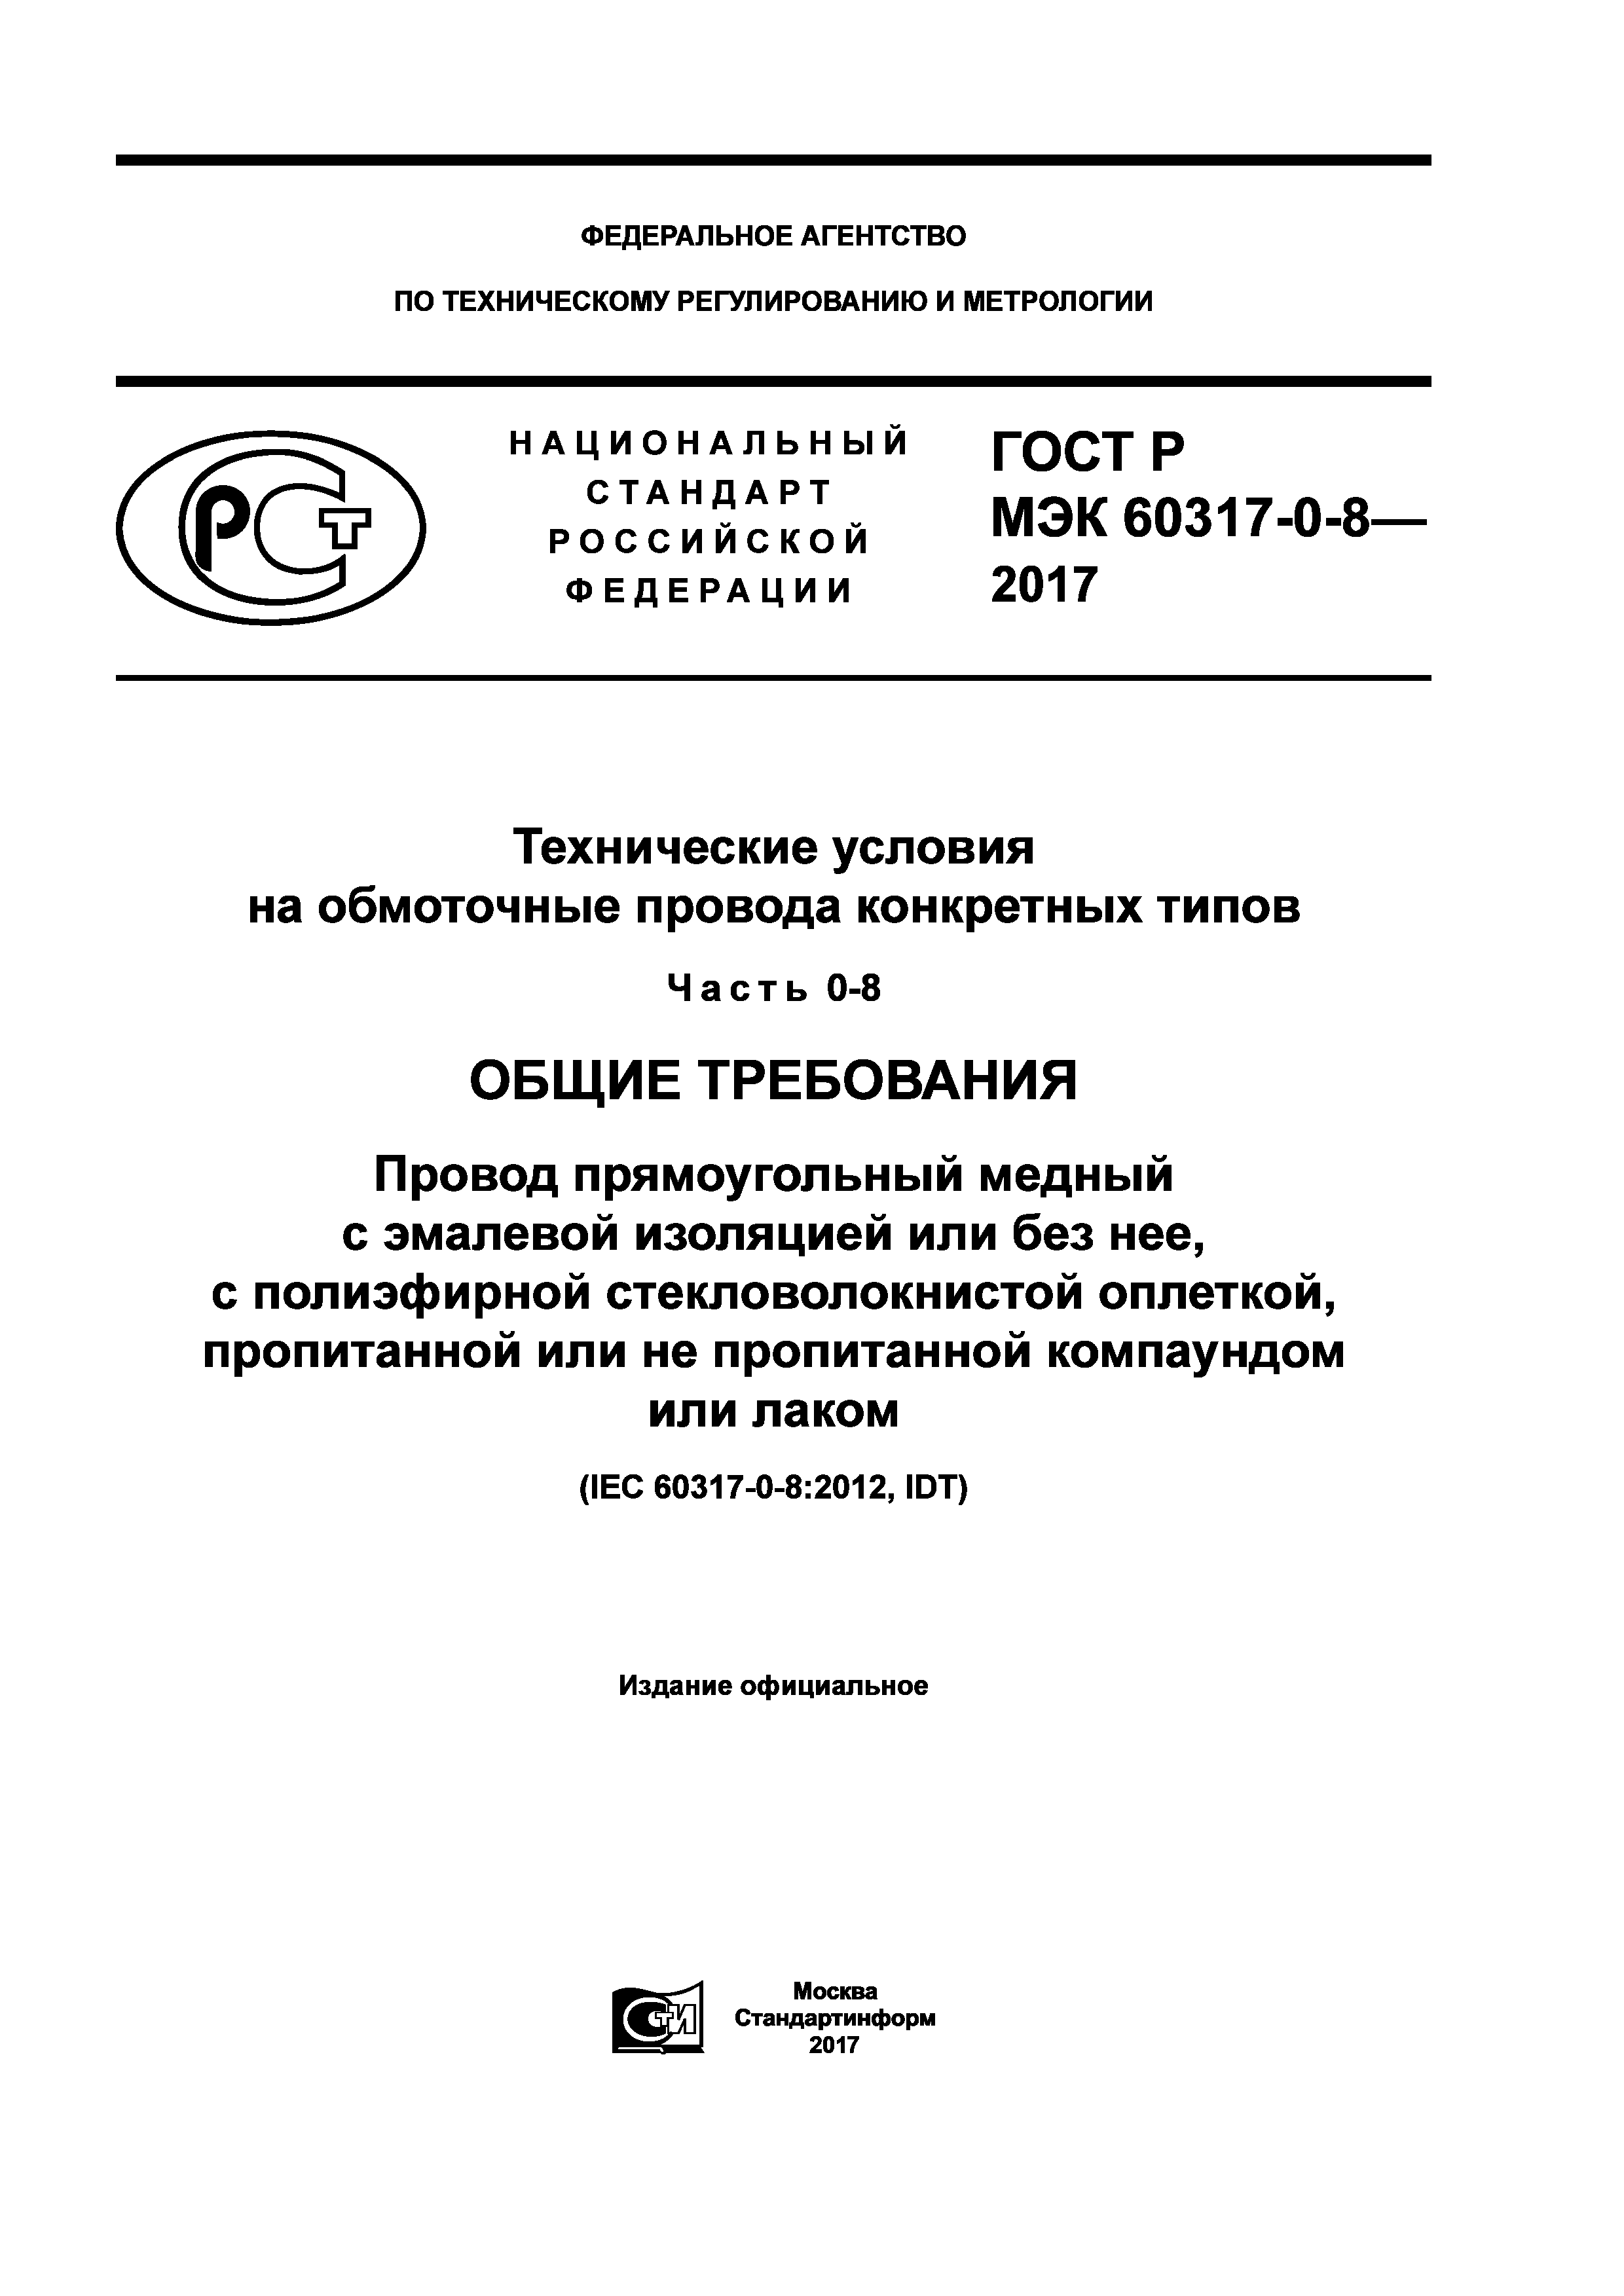 ГОСТ Р МЭК 60317-0-8-2017